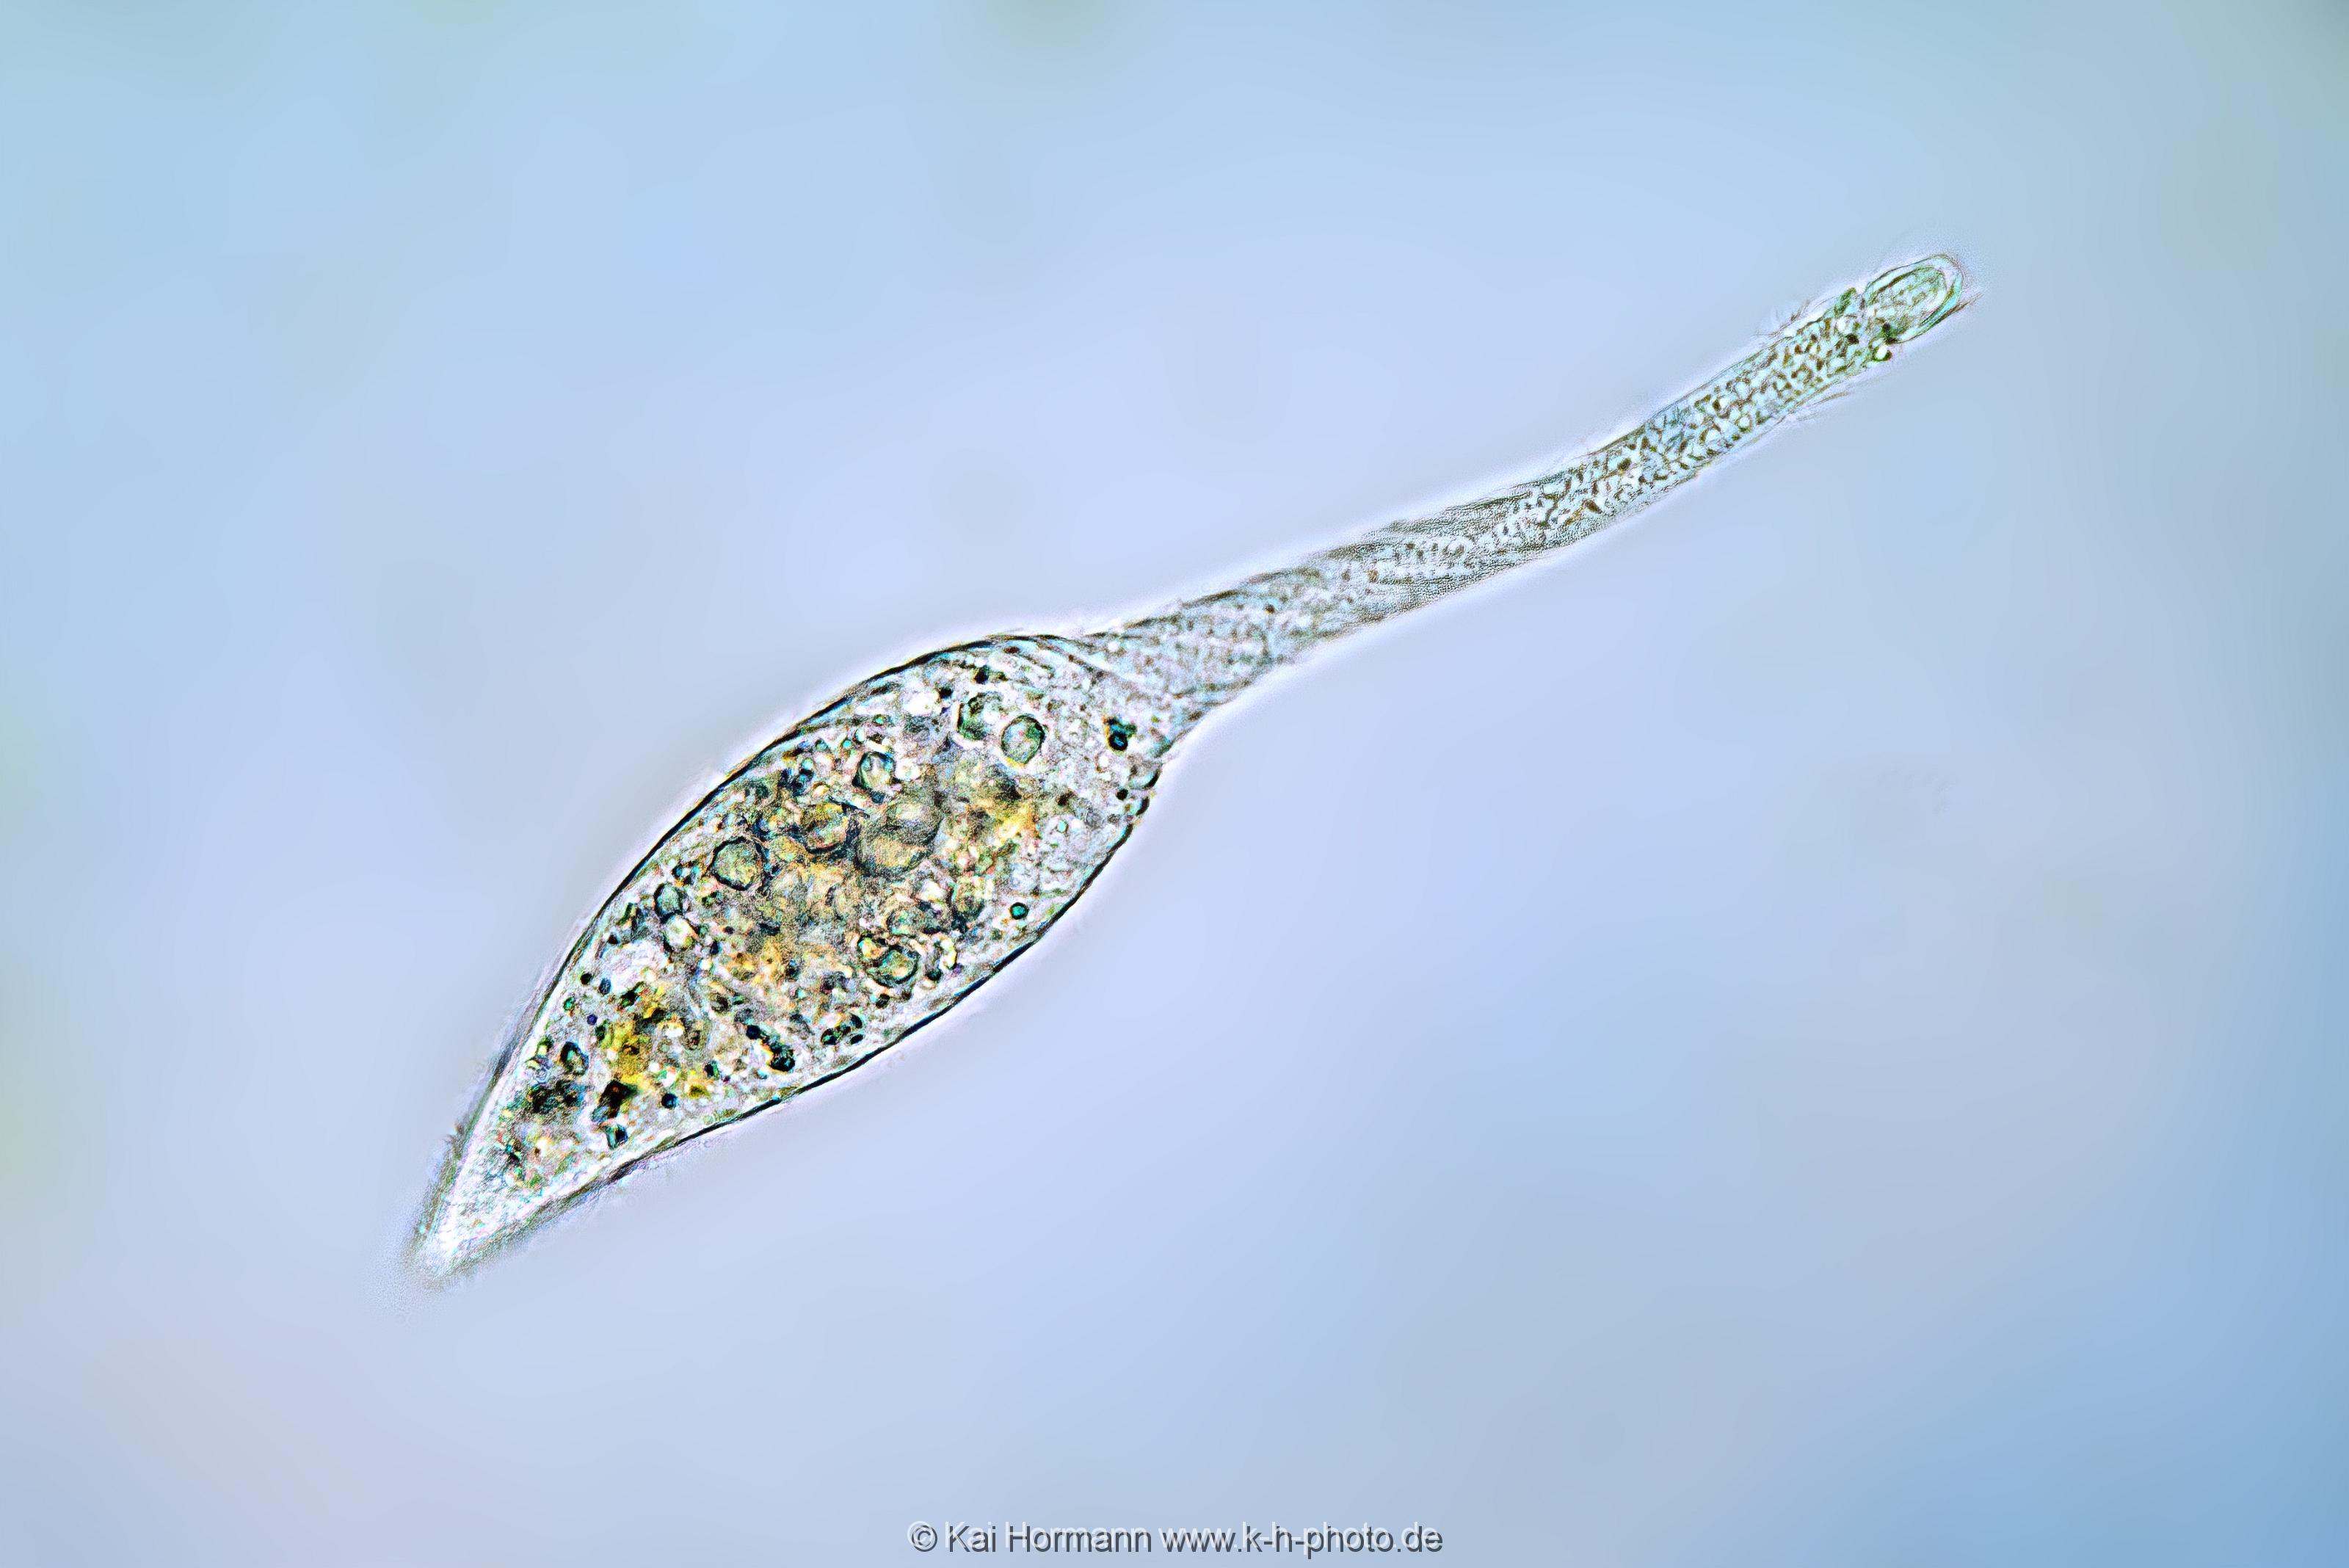 Schwanenhalstierchen lacrymaria olor. Mikrofotografie: Mikroskopische Aufnahmen von Einzellern, Algen und Kleinstlebewesen.